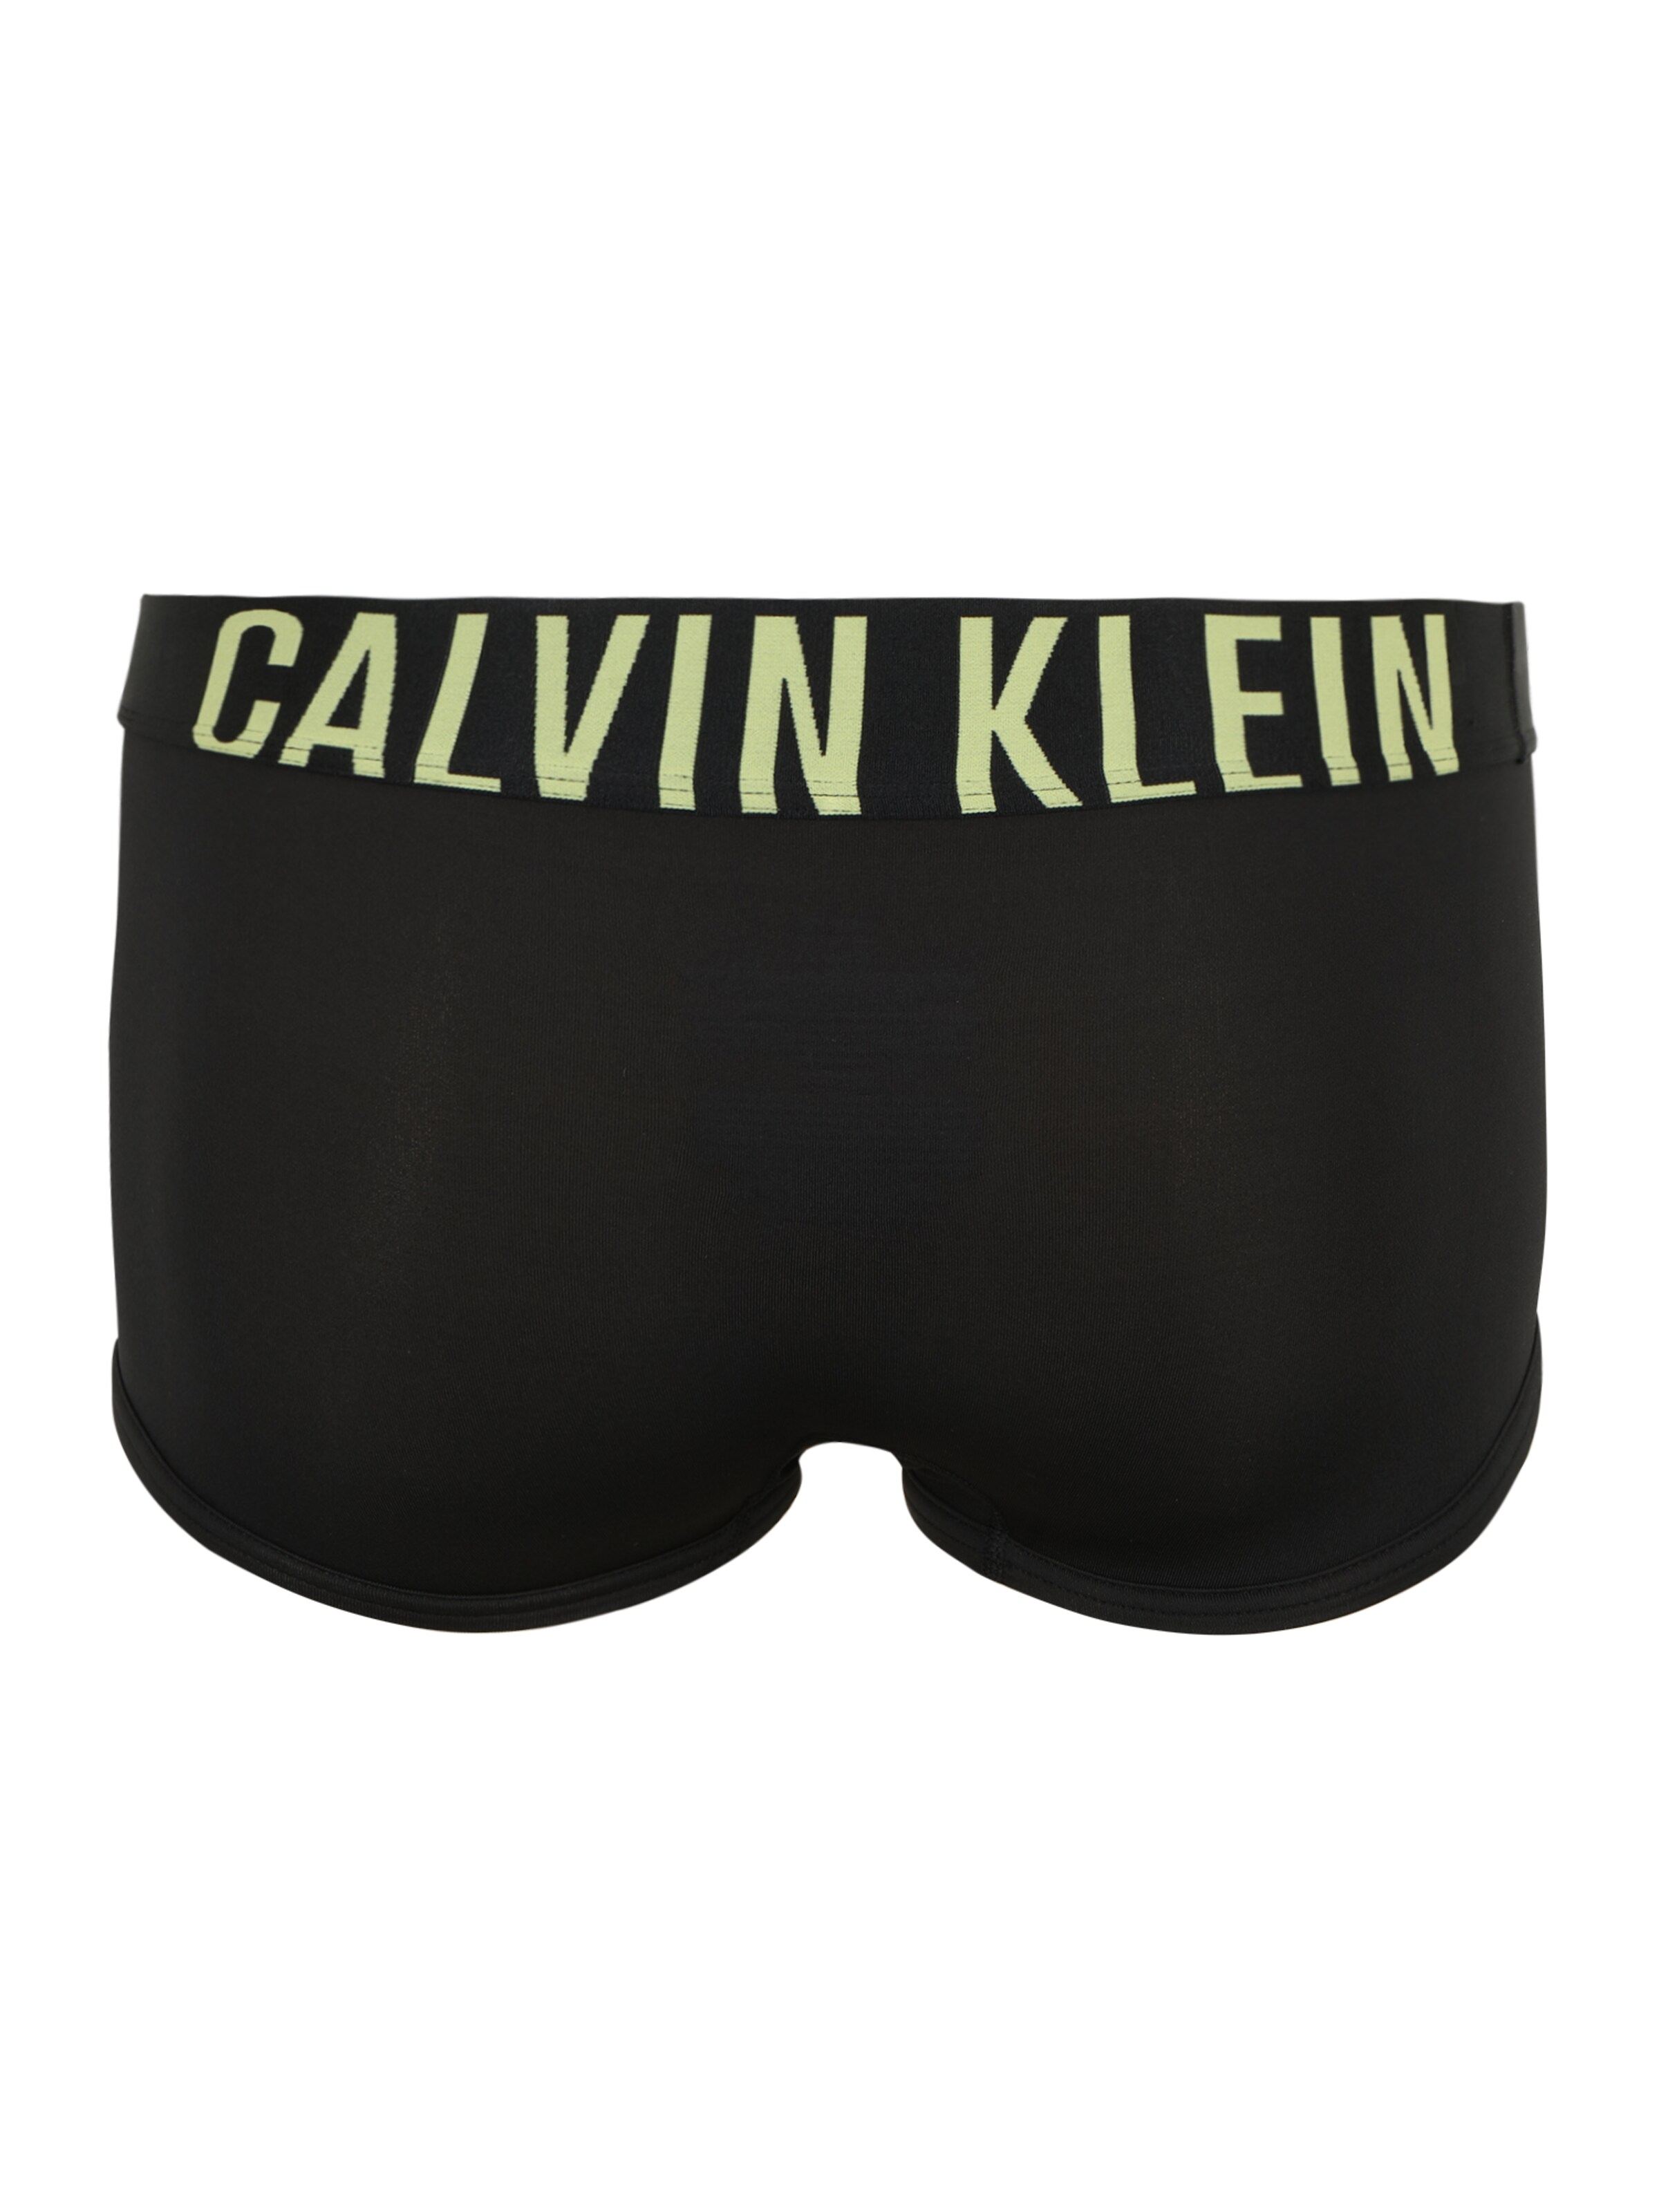 Männer Wäsche Calvin Klein Underwear Boxershorts 'Intense Power' in Gelb, Schwarz - YM93692